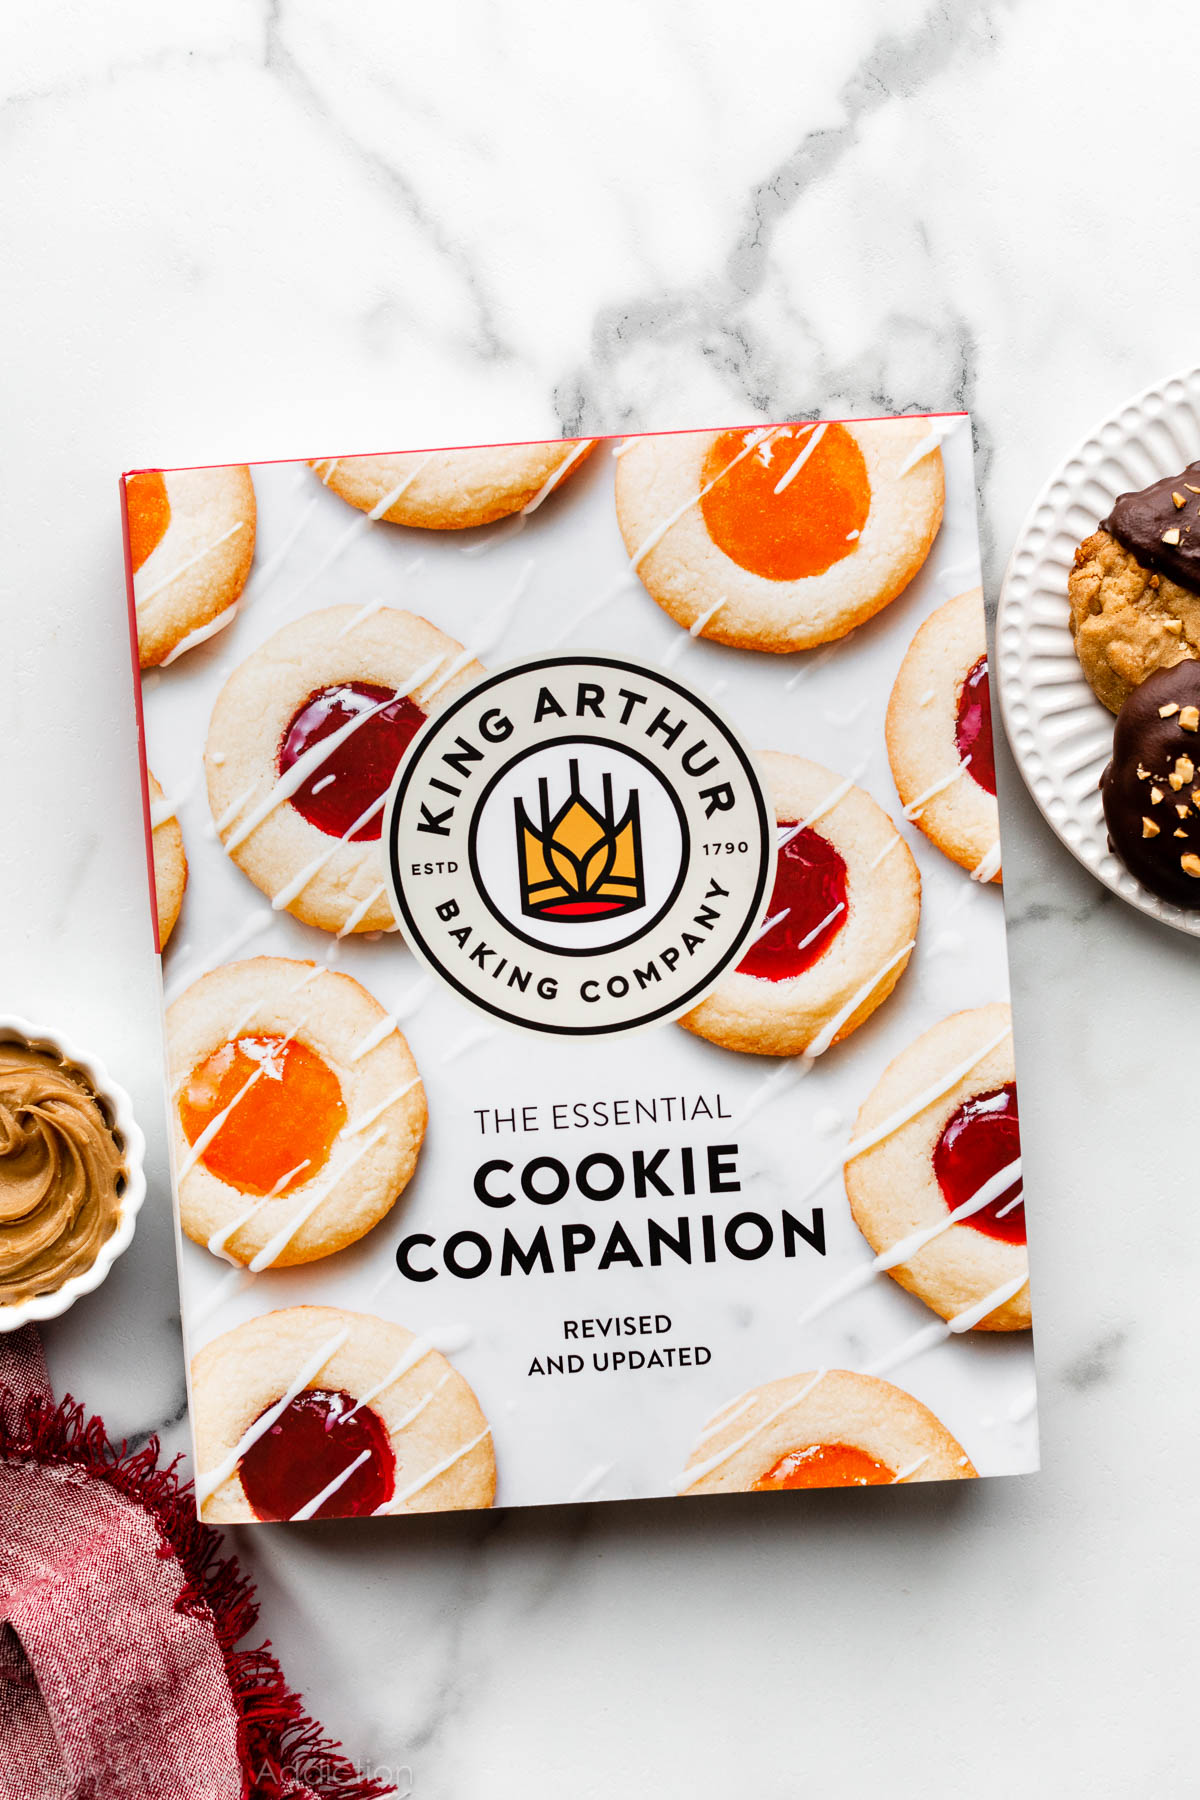 photo du livre de cuisine The Essential Cookie Companion de King Arthur Baking Company